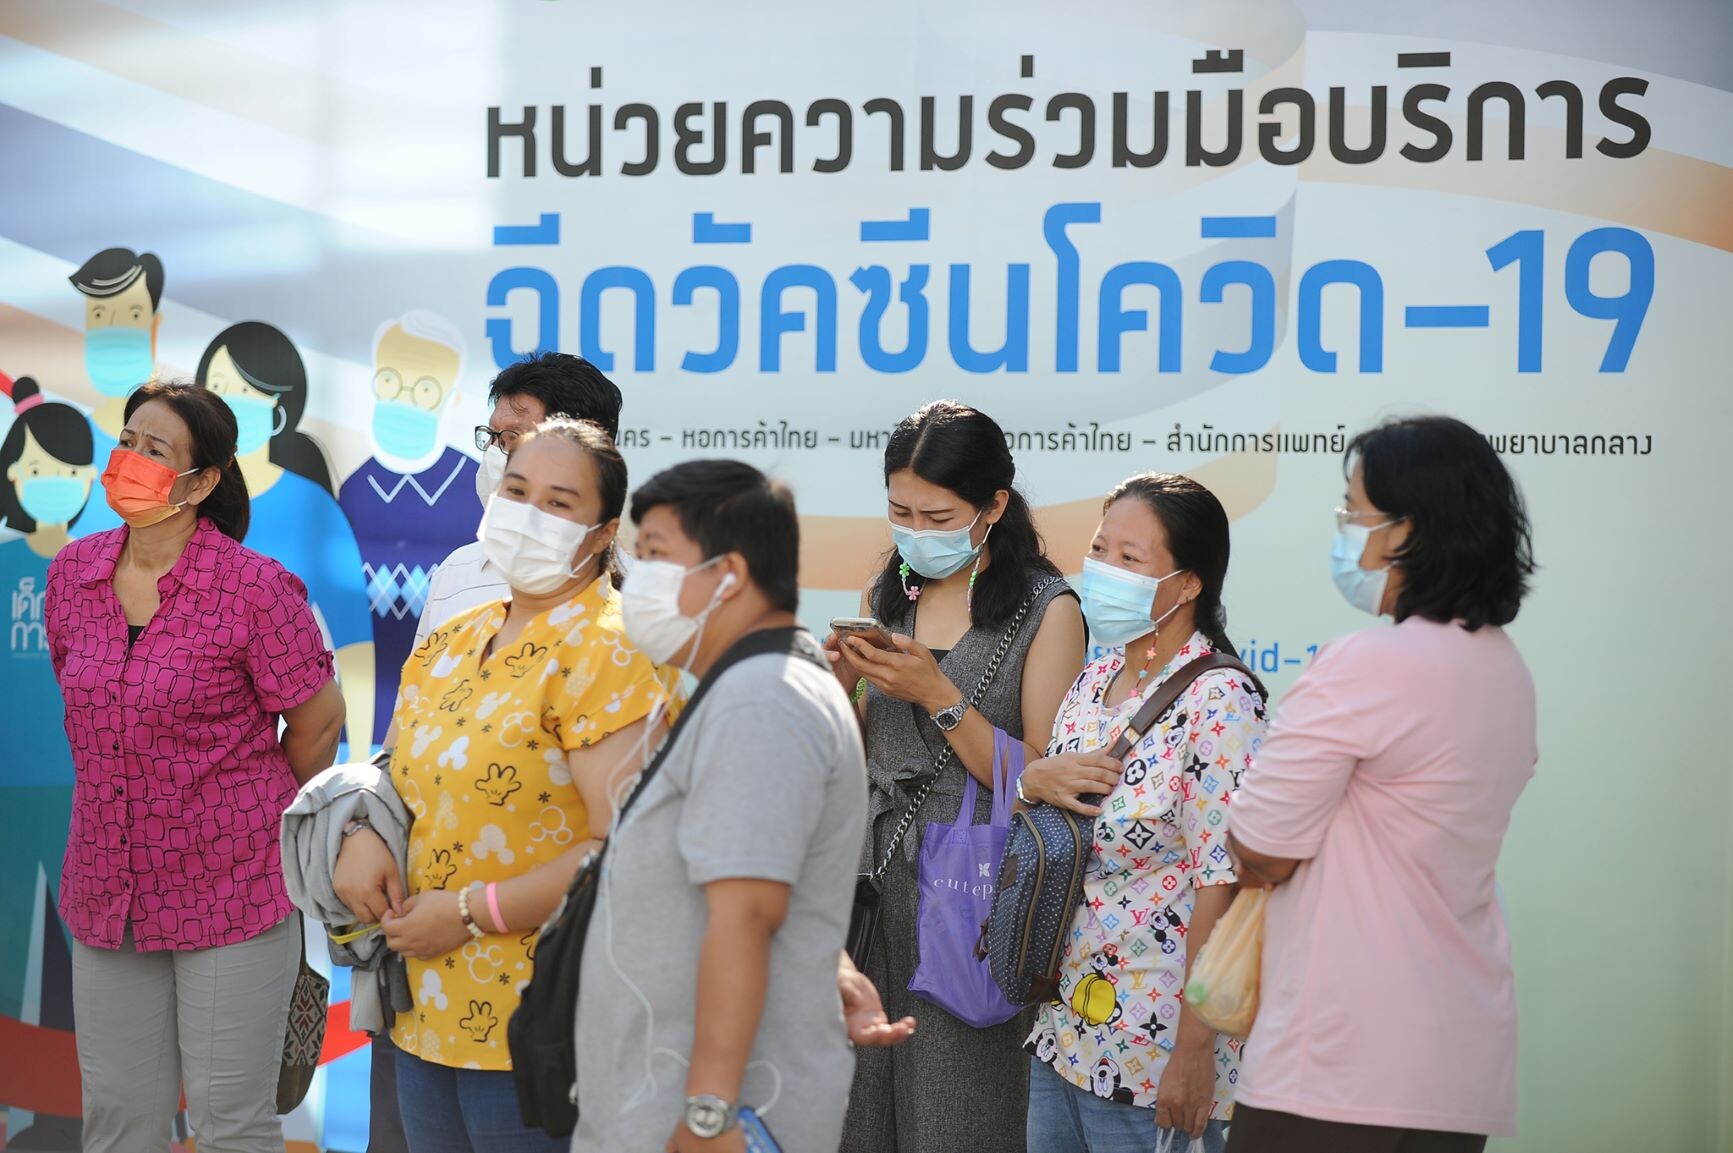 มหาวิทยาลัยหอการค้าไทย ใช้ศาสตร์ความรู้ที่หลากหลายบูรณาการร่วมกัน เป็นสนามศูนย์ฉีควัคซีน โควิด19